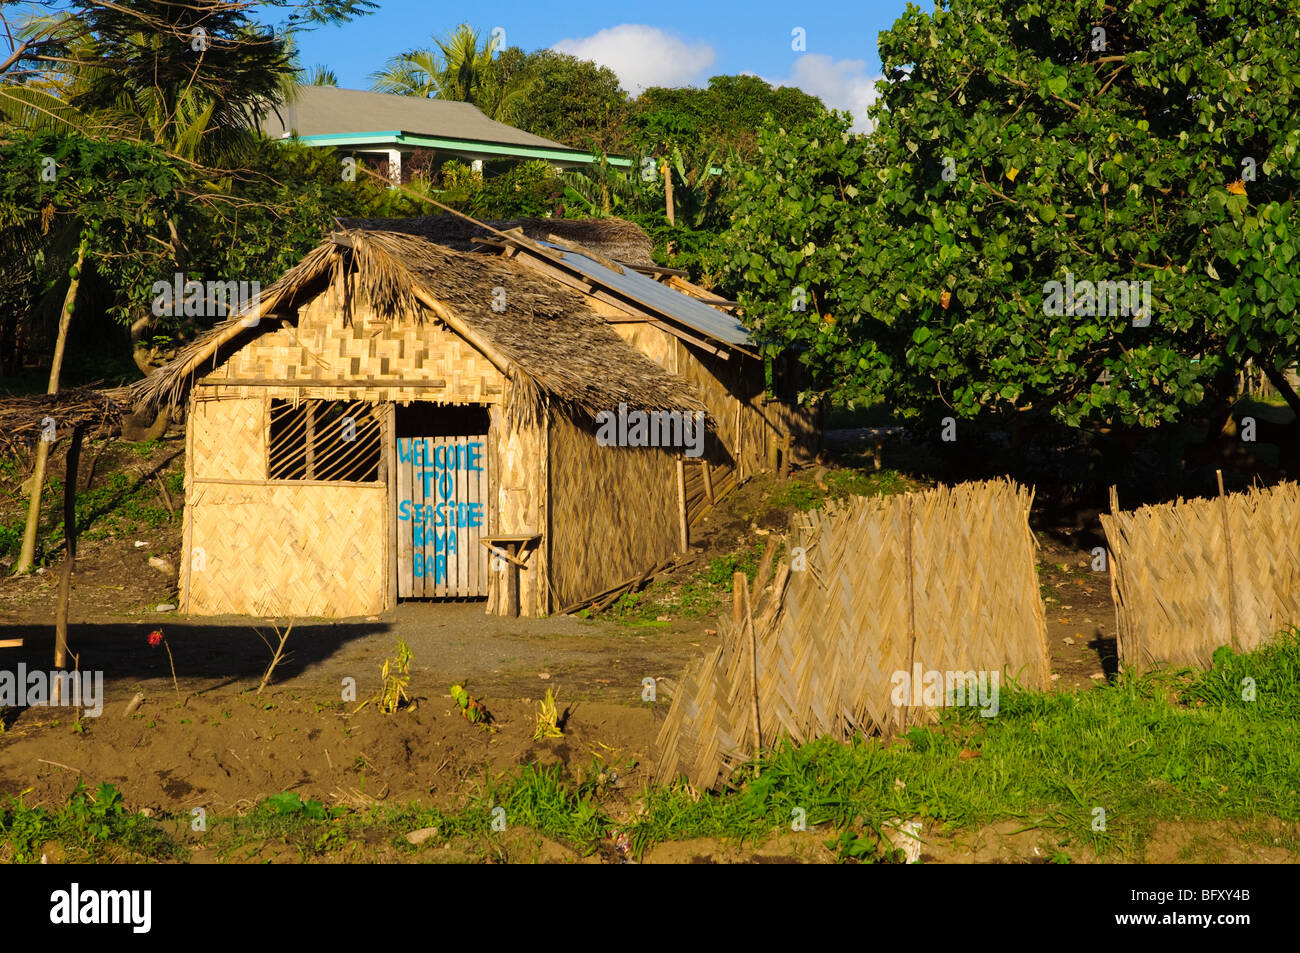 Ein Kava bar, eine Grashütte in Vanuatu, Süd-Pazifik. Bitte klicken Sie für Details. Stockfoto